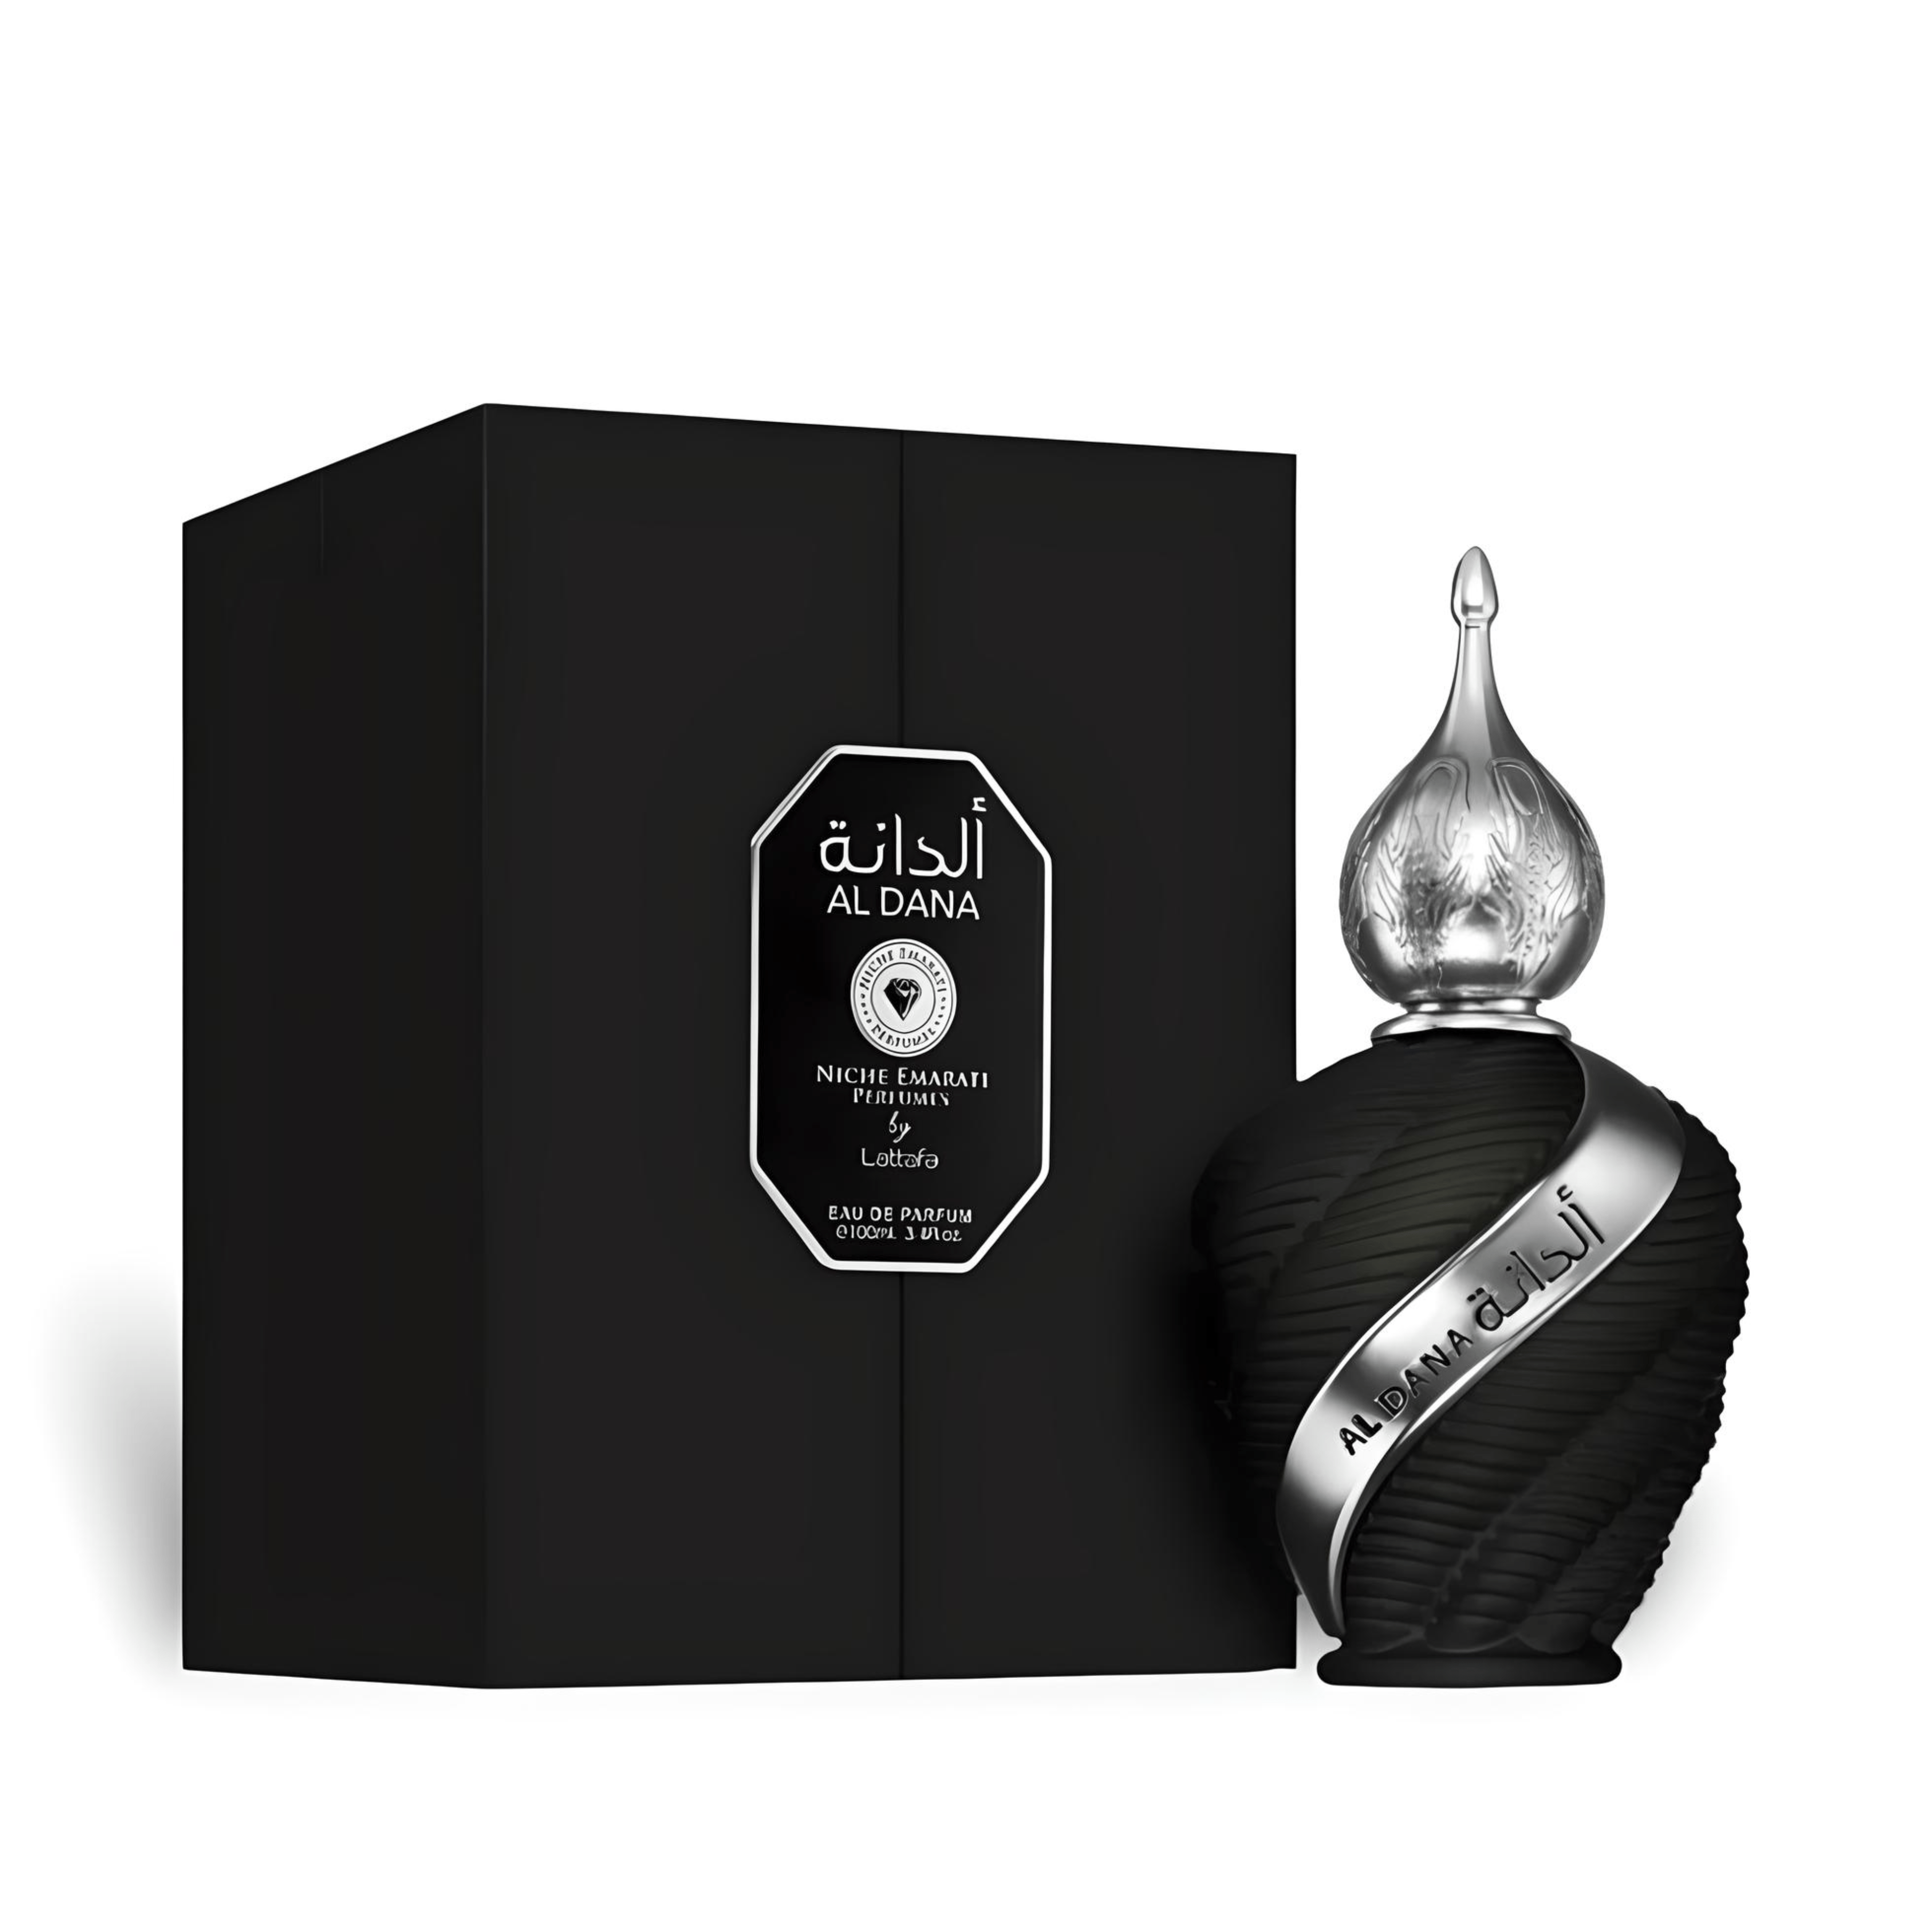 Al Dana Perfume / Eau De Parfum 100Ml By Niche Emarati Perfumes (Lattafa)